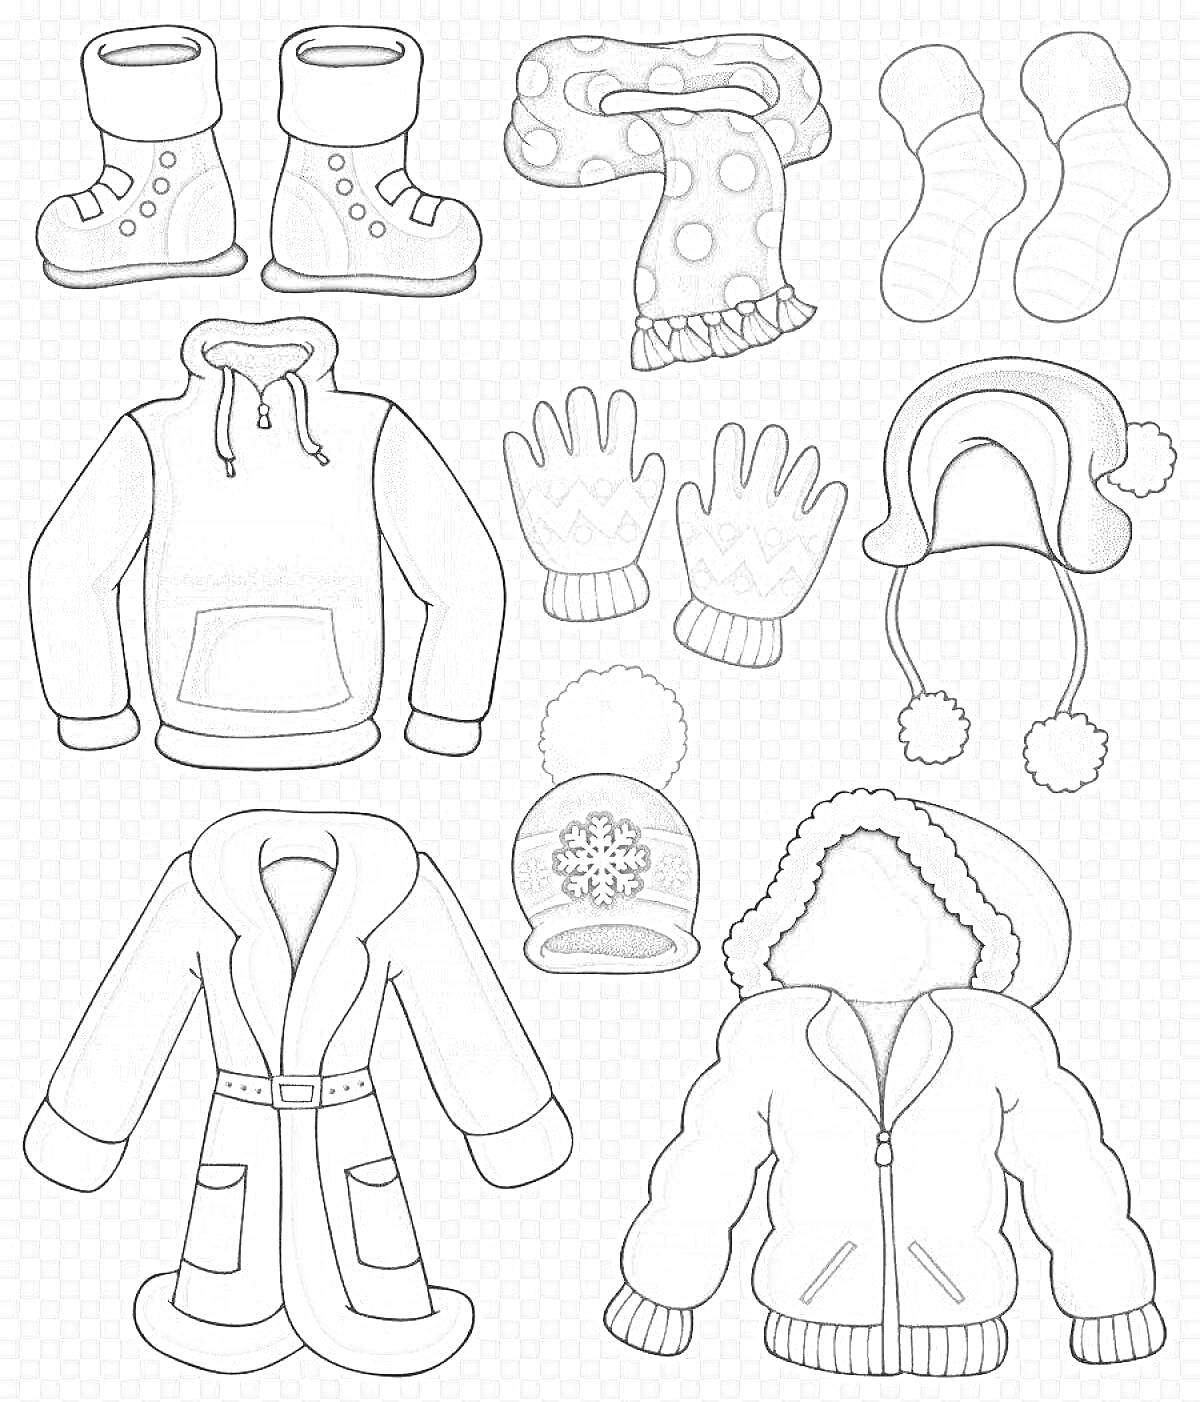 Раскраска сапоги, шарф в горох, носки, жилетка с капюшоном, перчатки, шапка с помпоном, шапка с ушками и помпонами, пальто, вязаная шапка с снежинкой, куртка с капюшоном